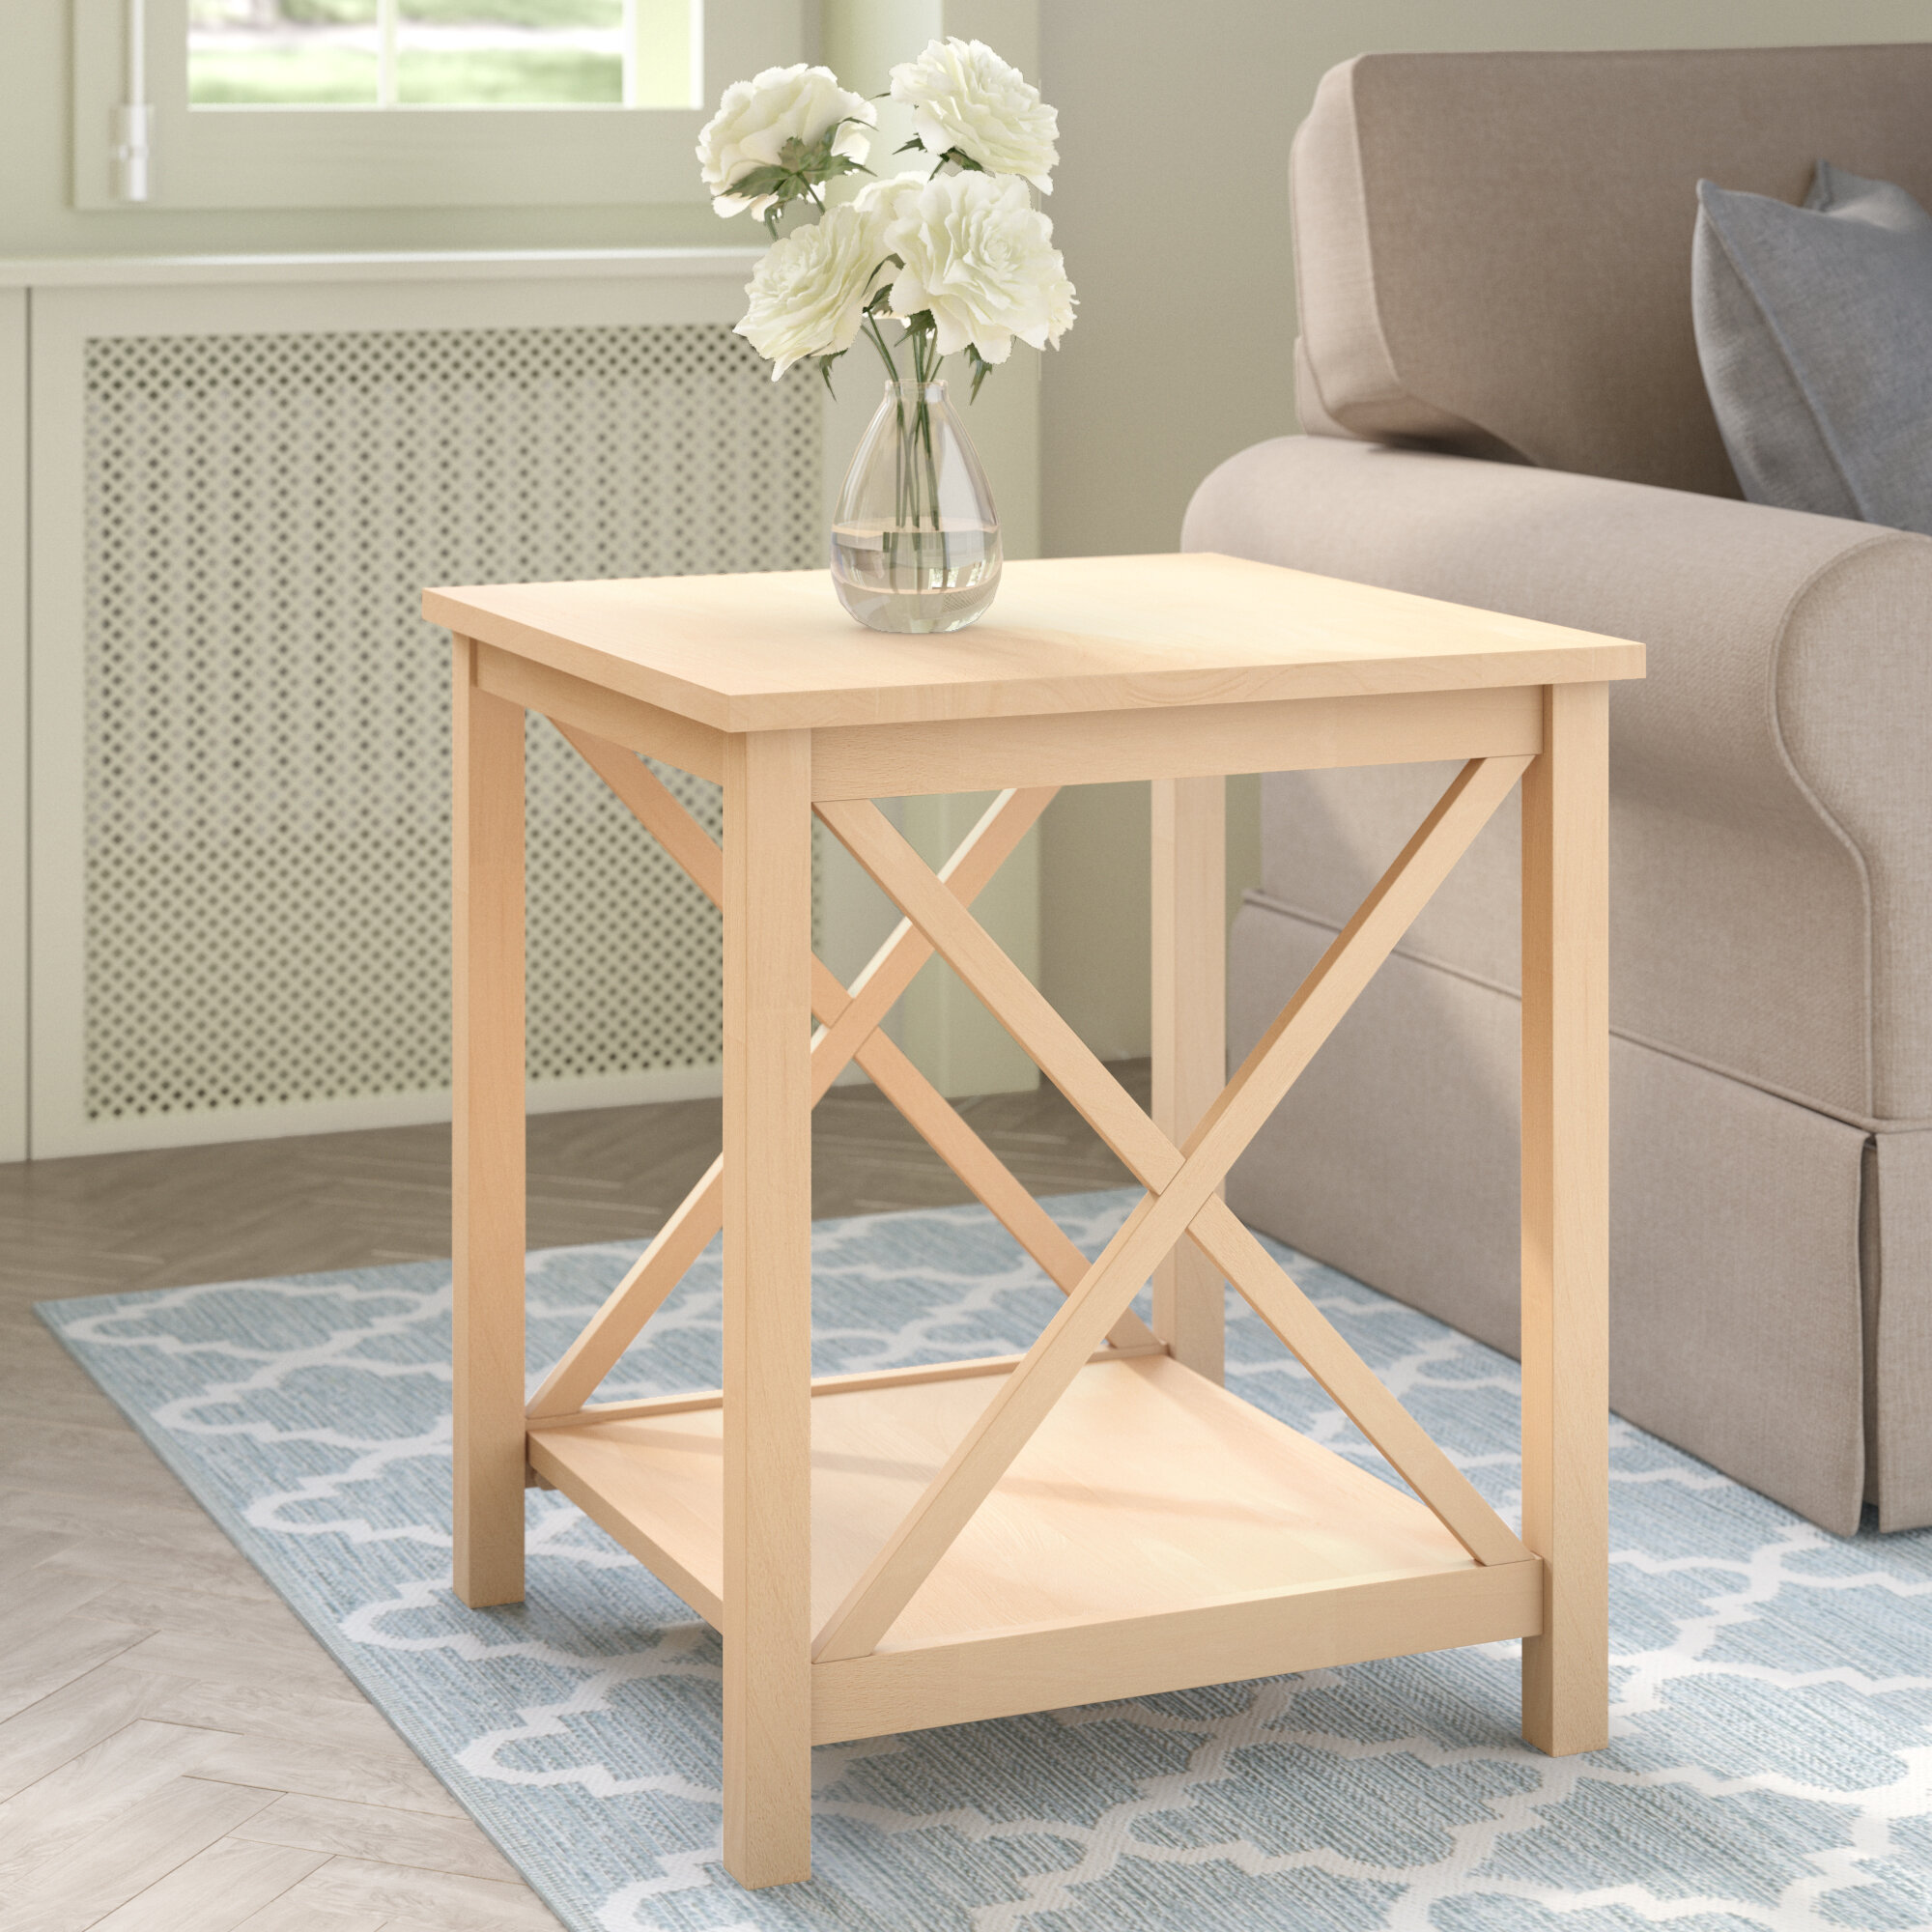 Mistana Kaiser Solid Wood End Table Reviews Wayfair